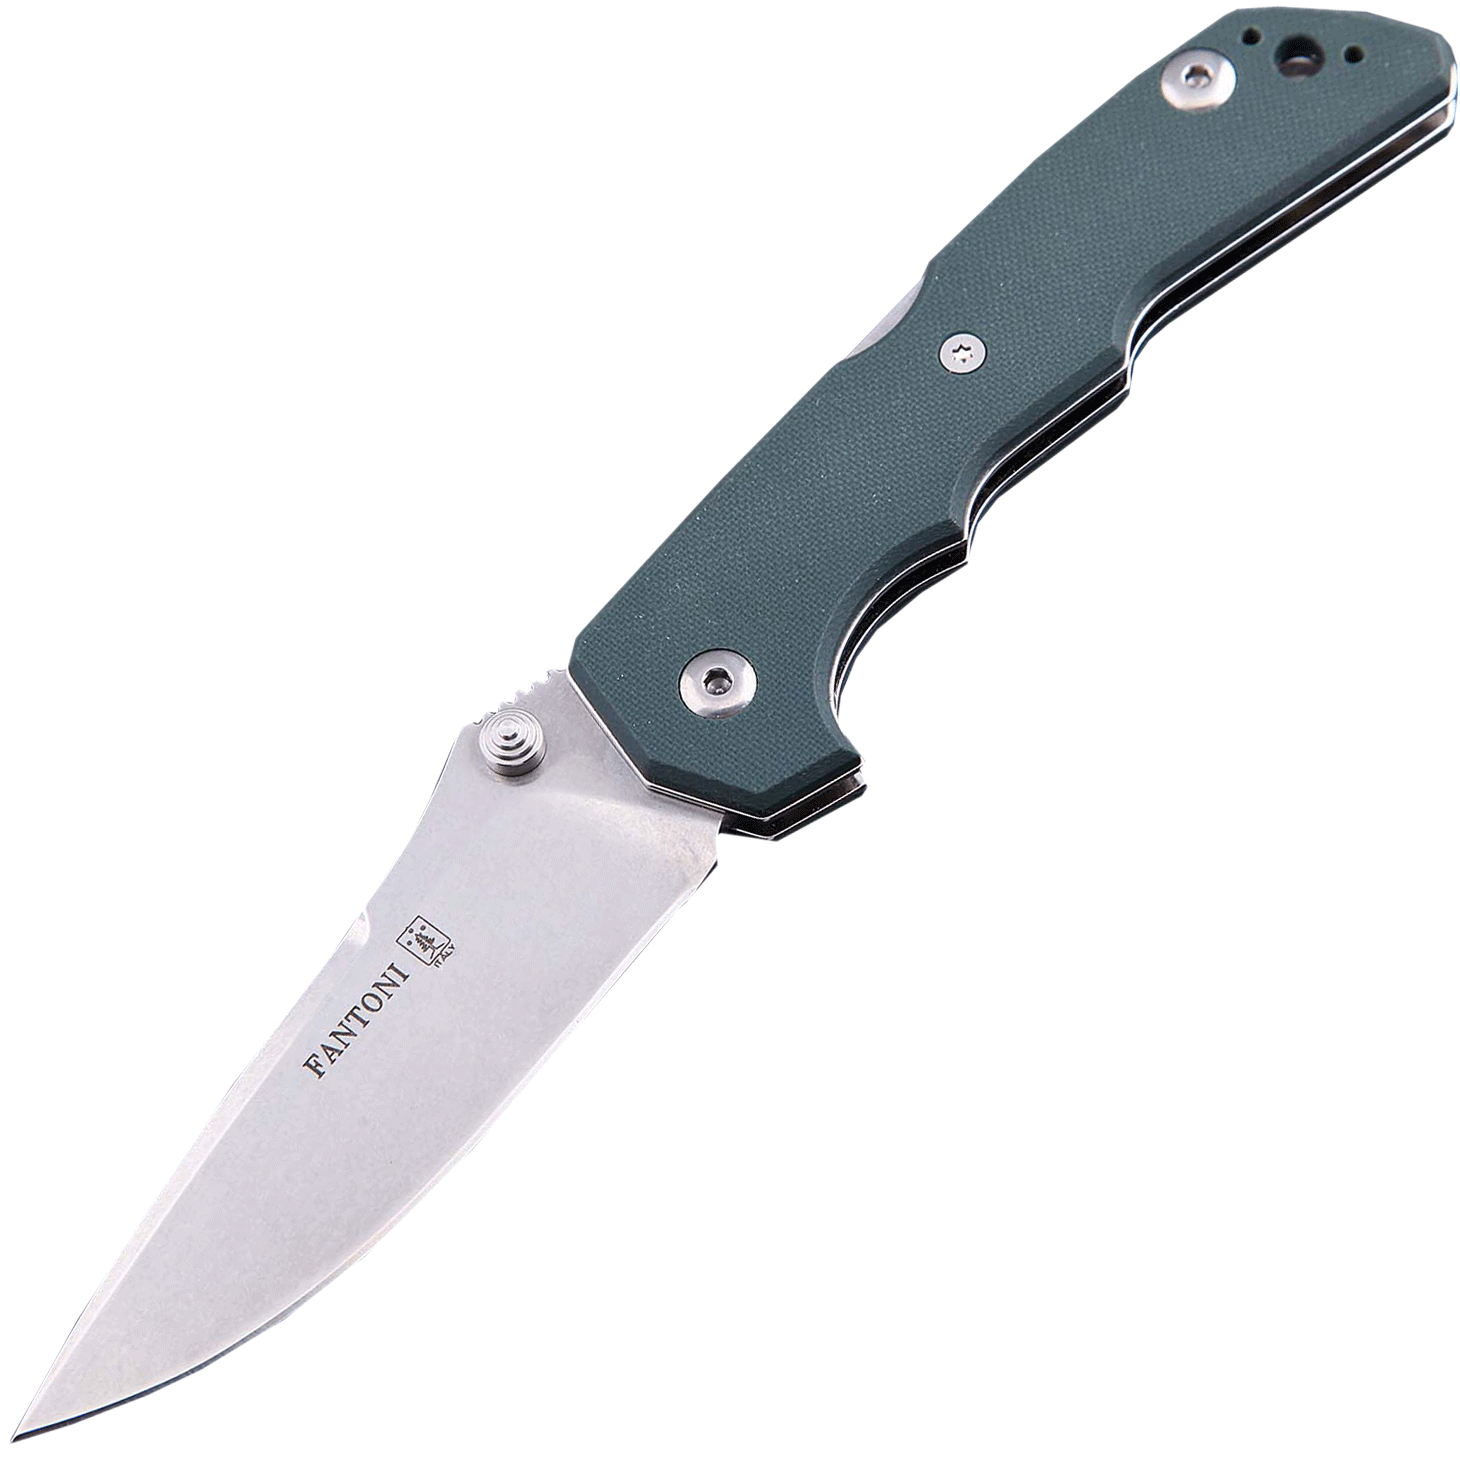 Складной нож Fantoni Mix, FAN/MIX Gr, сталь CPM-S30V, рукоять серо-зеленый G10